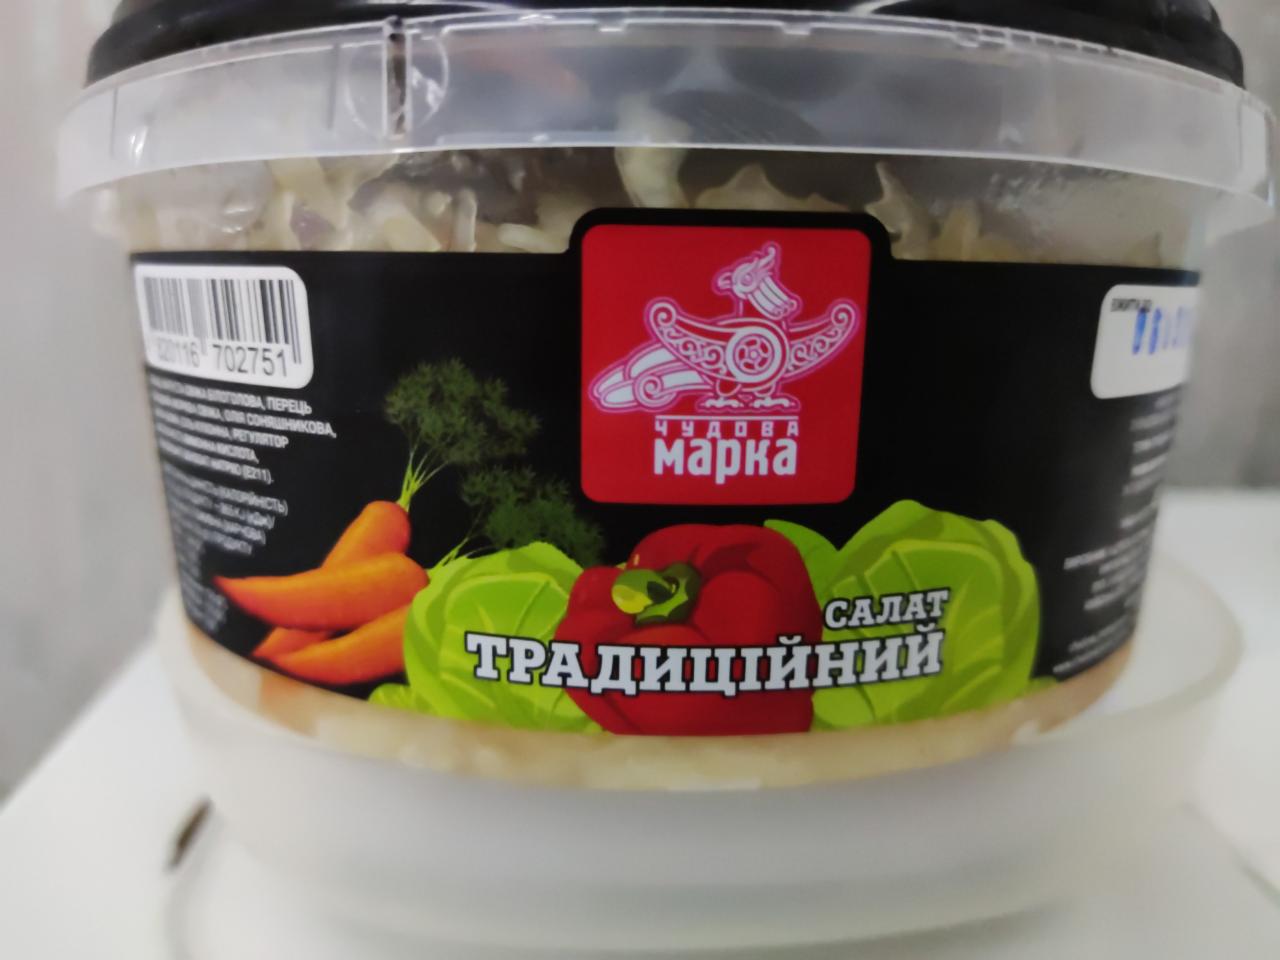 Фото - Капуста свежая с овощами салат Традиционный Чудова марка